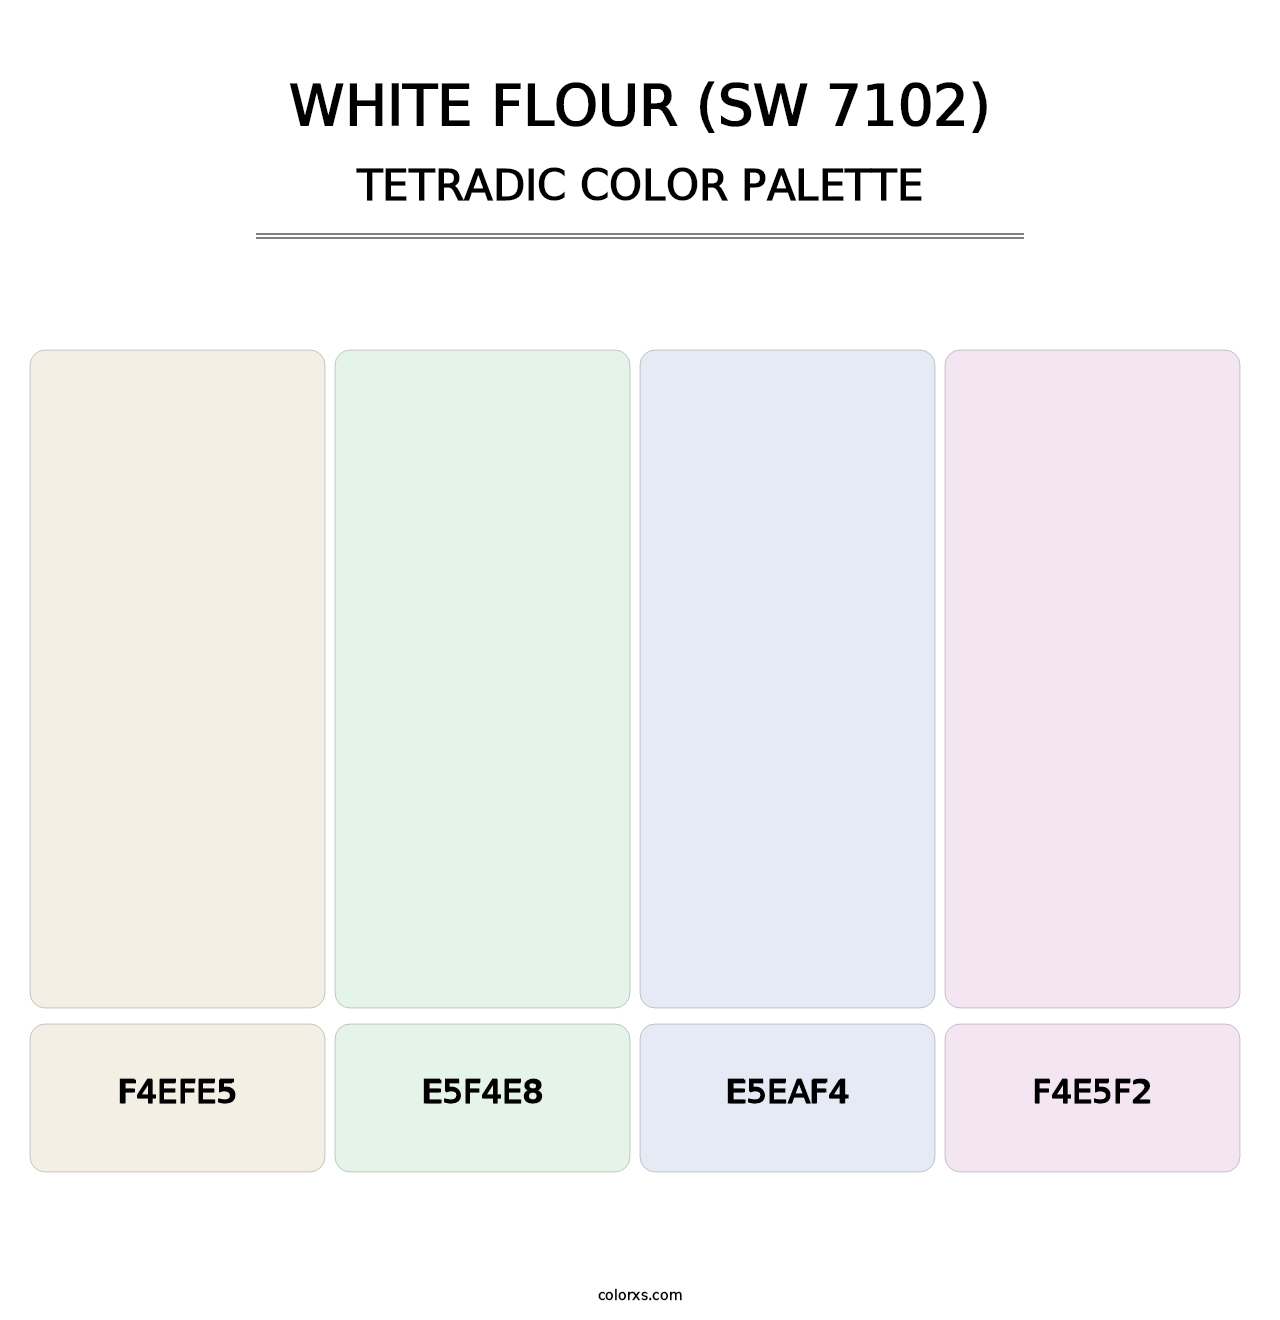 White Flour (SW 7102) - Tetradic Color Palette